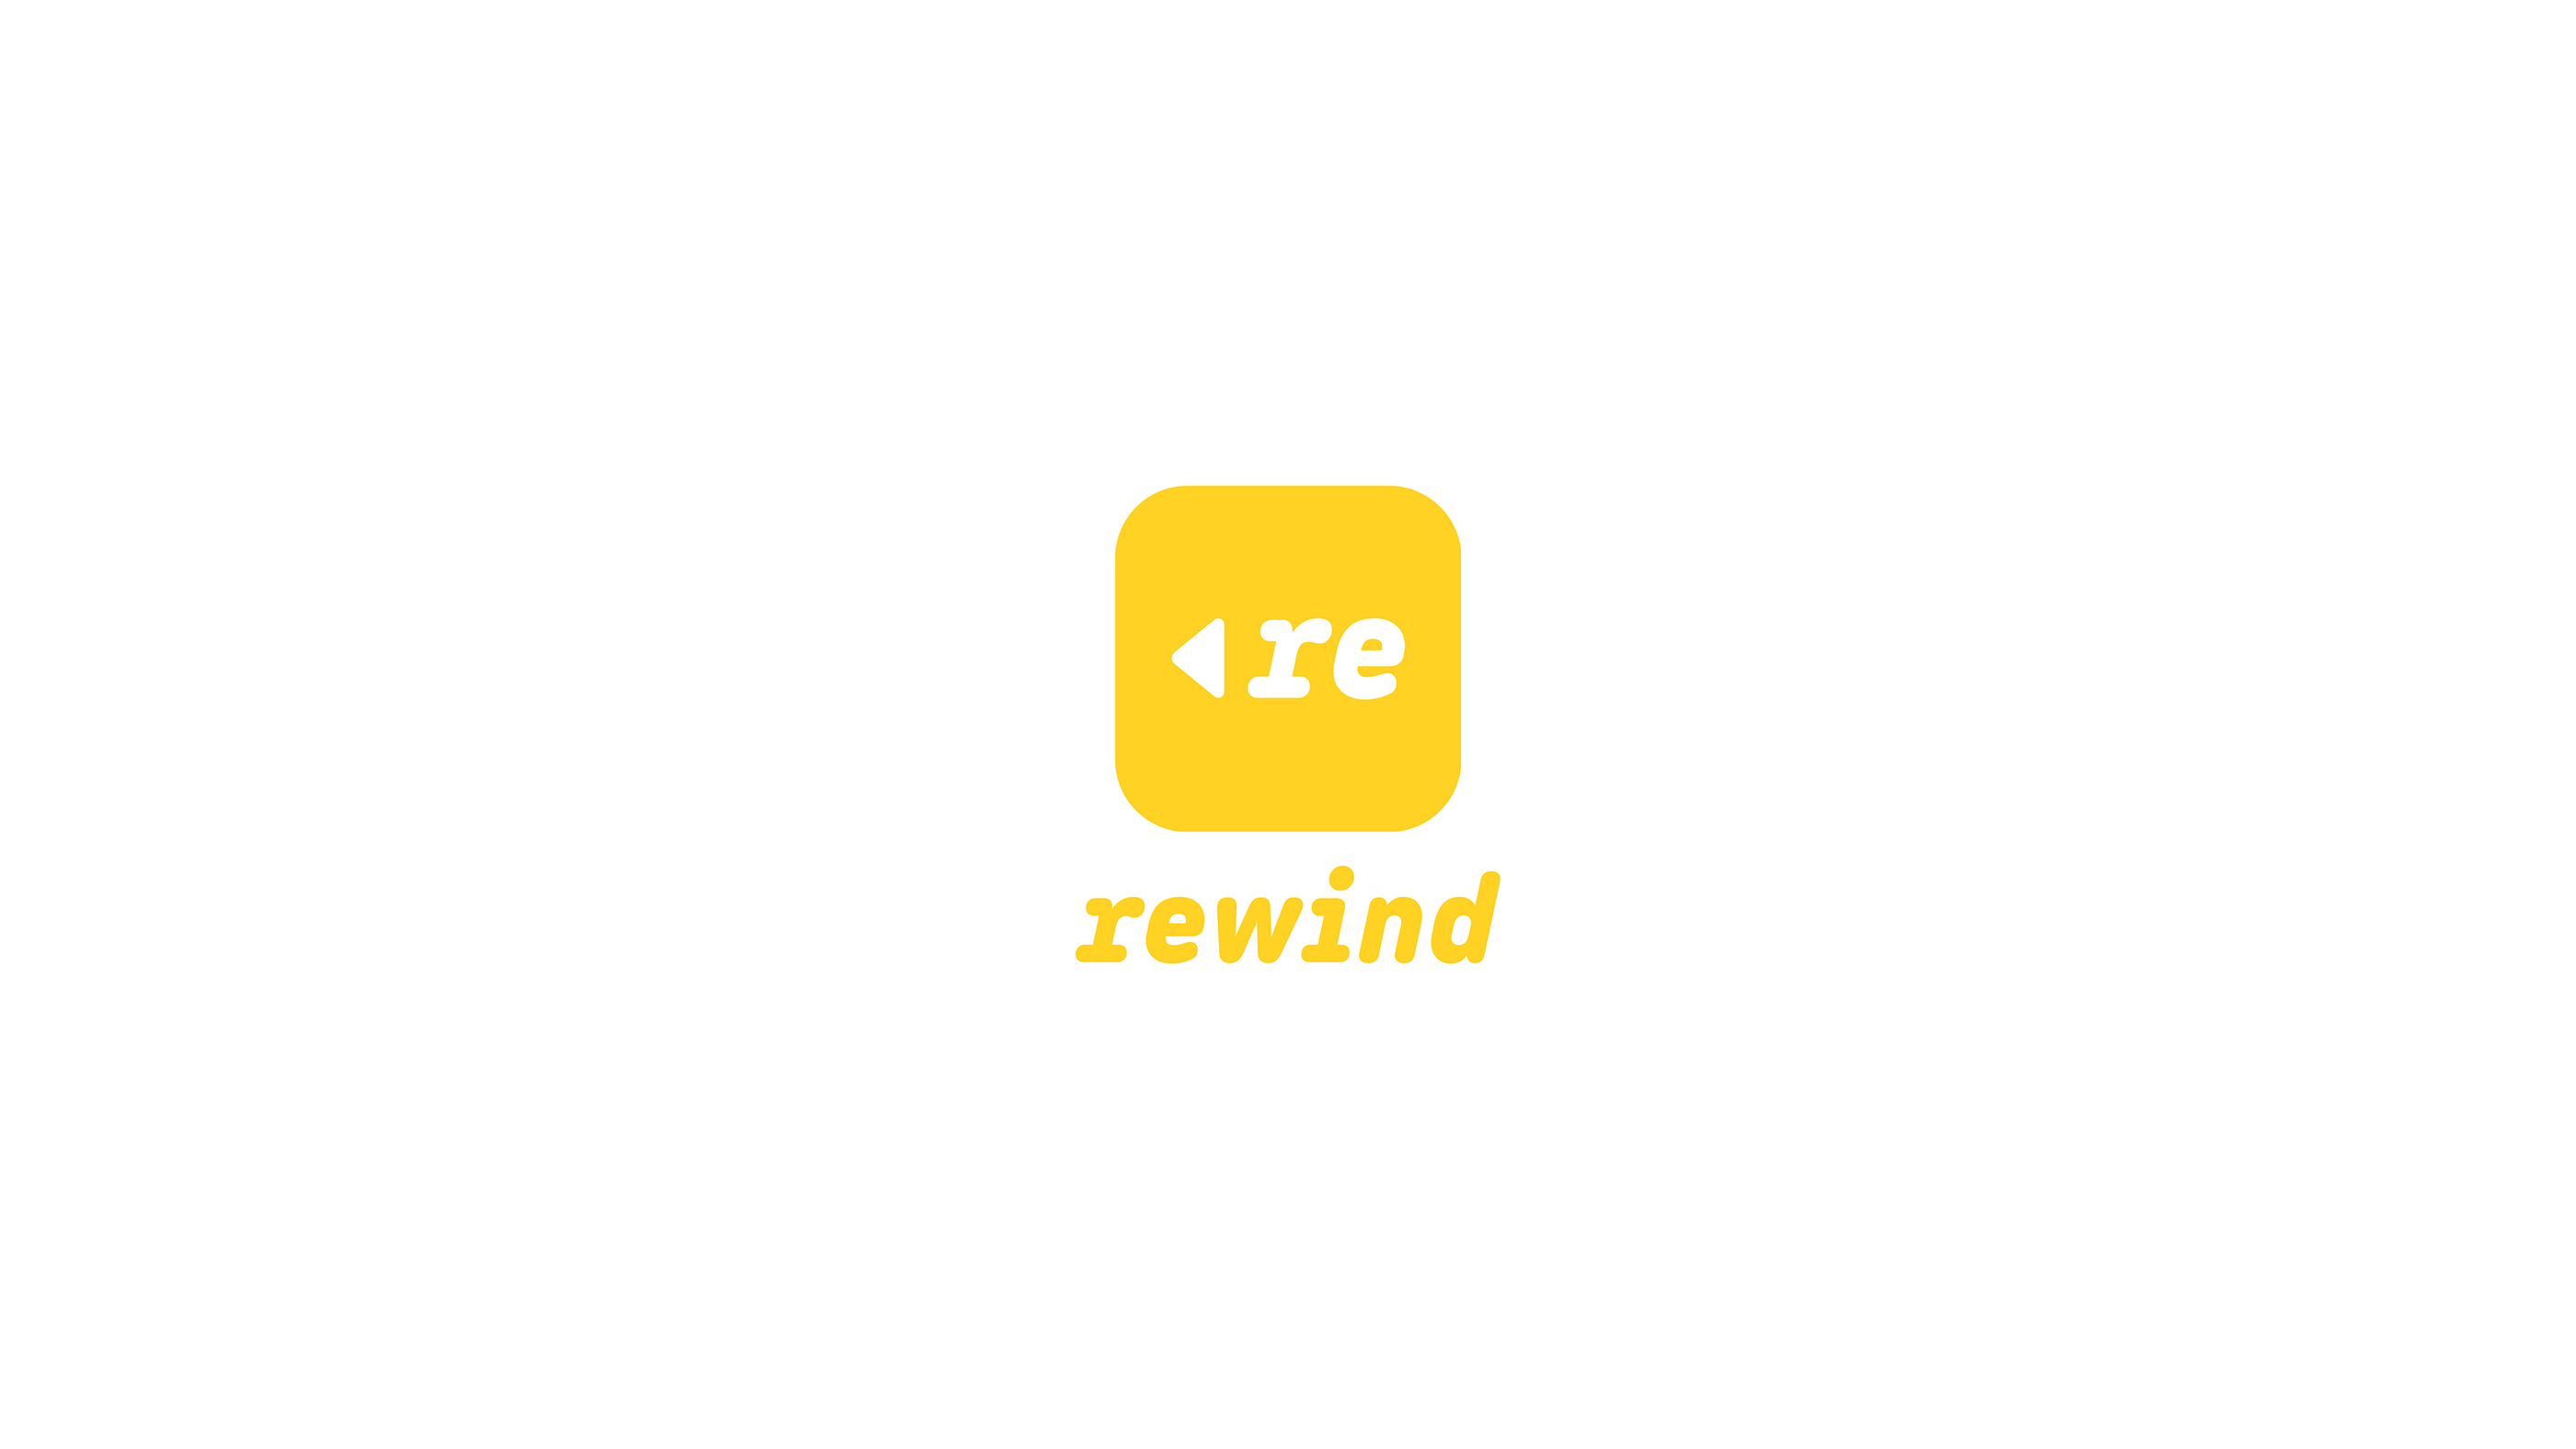 Rewind - Graphic Design - UI Design - 2020 © Morgan Gomez